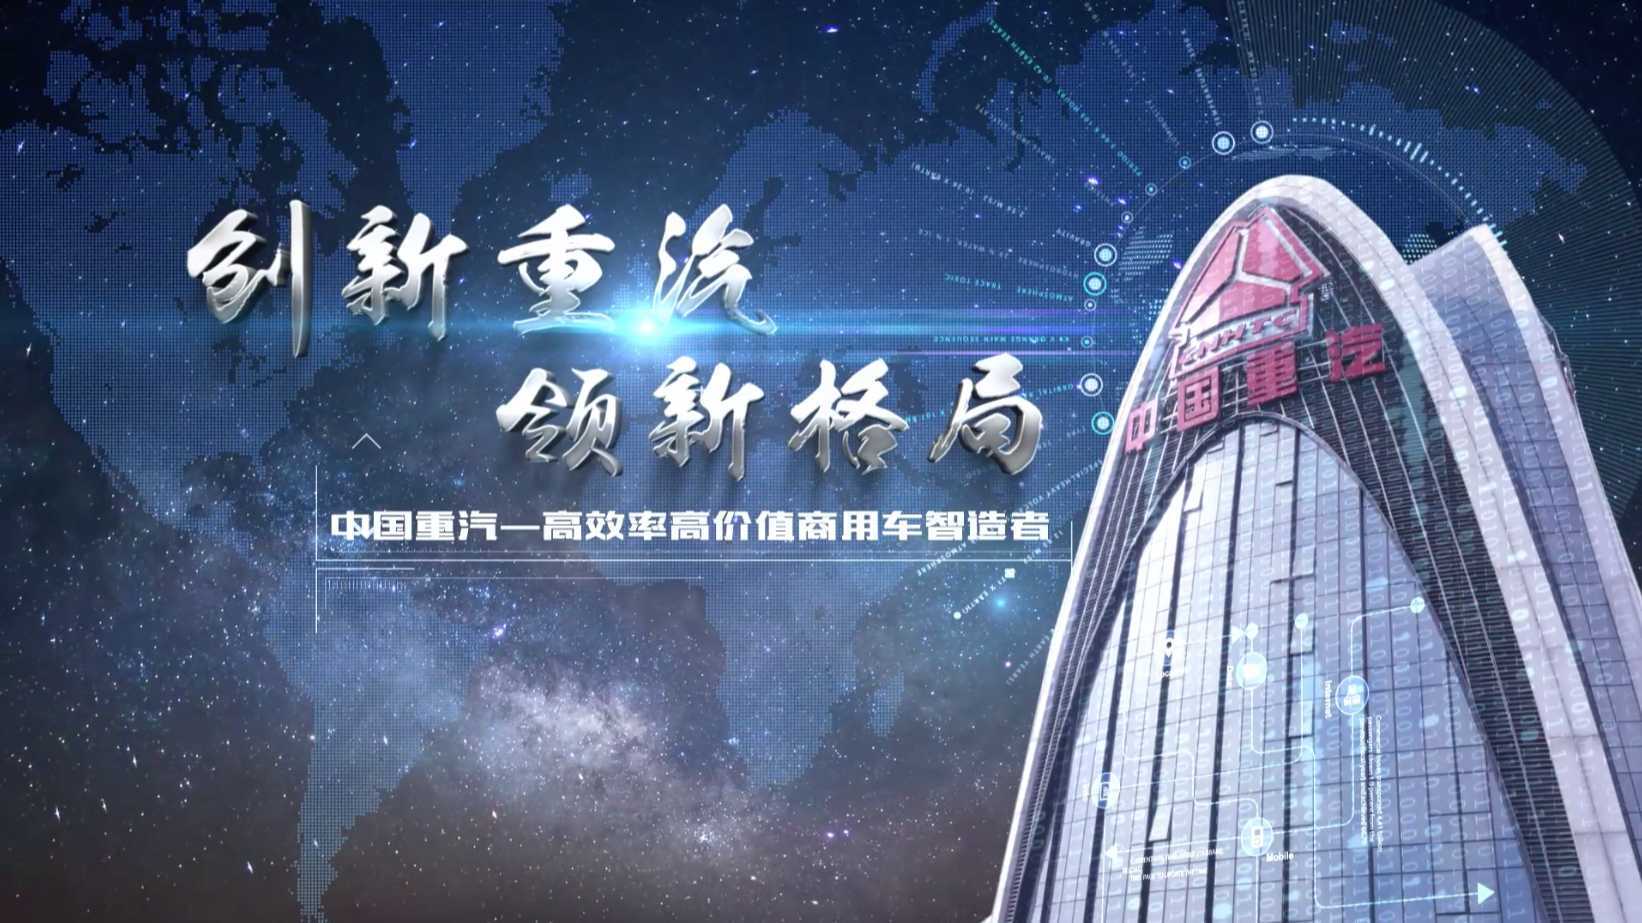 创新重汽 领新格局—中国重汽集团宣传片